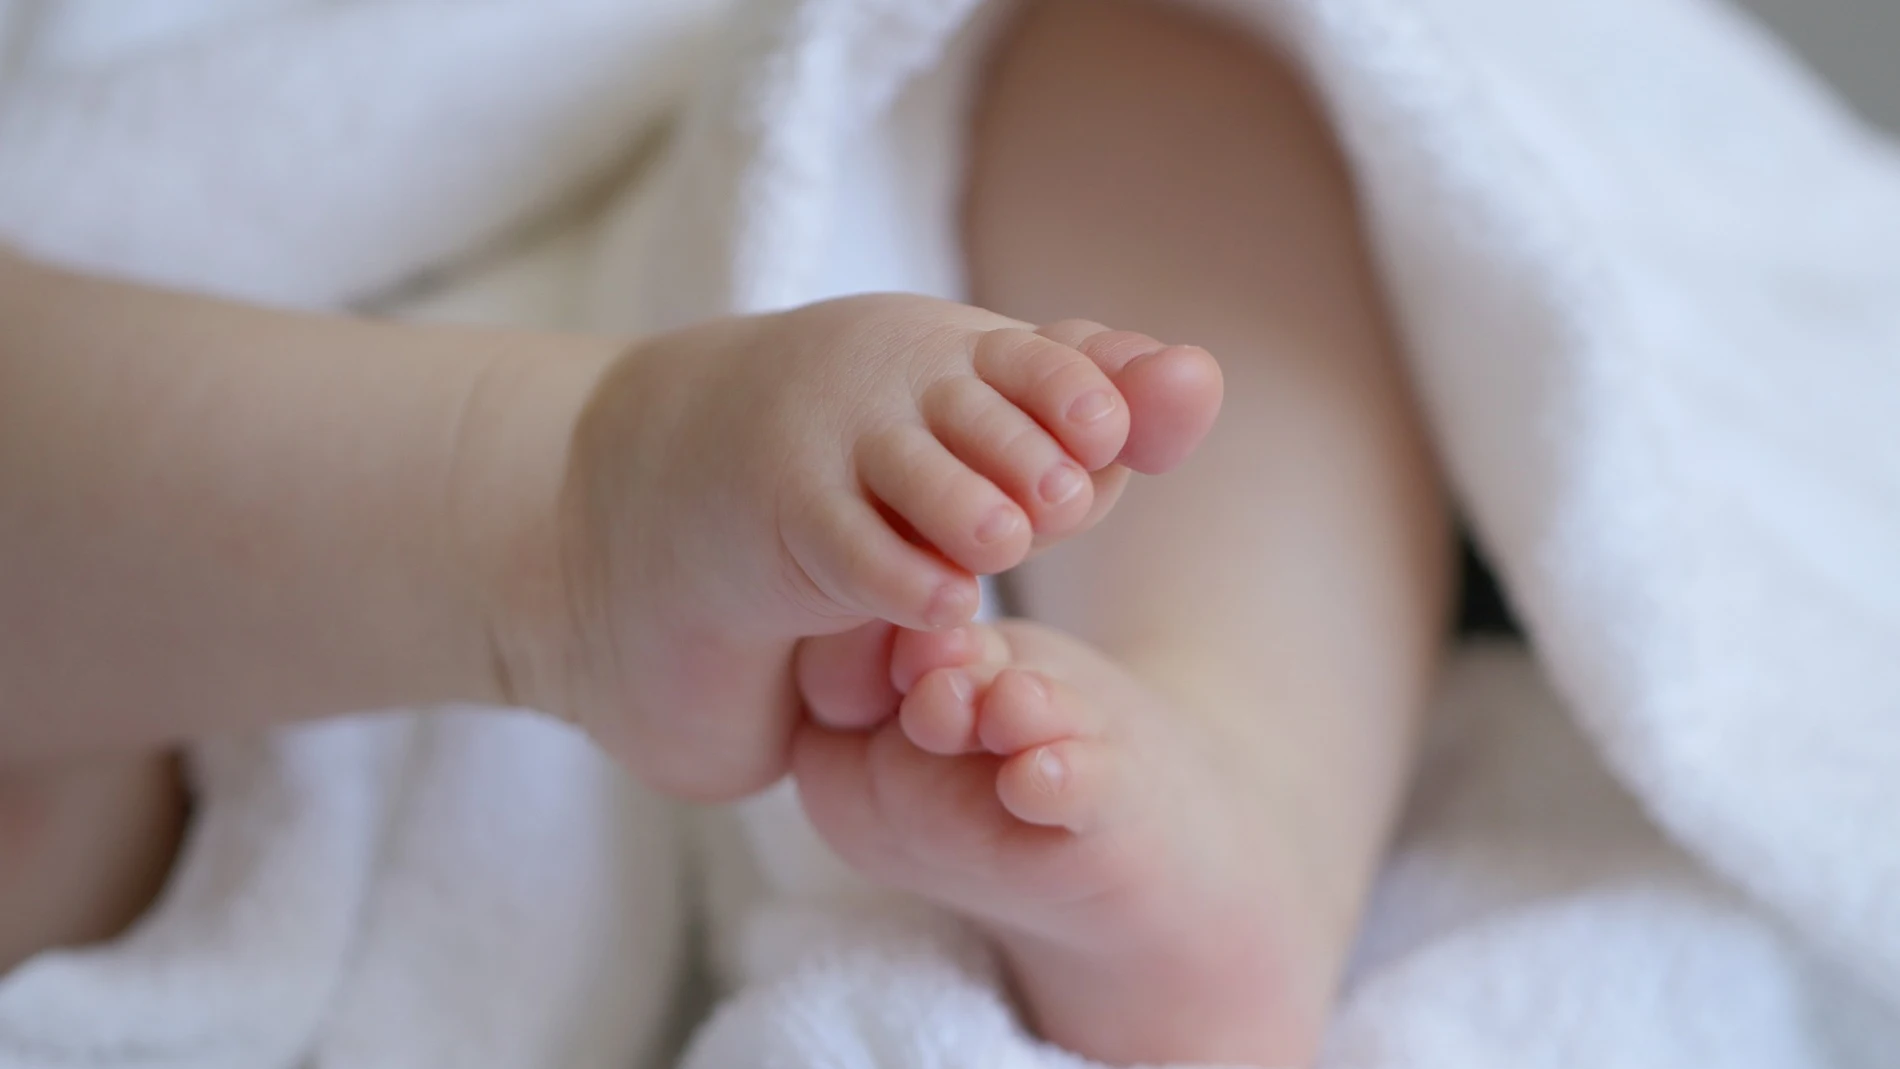 Pies de un bebé en una imagen de archivo.